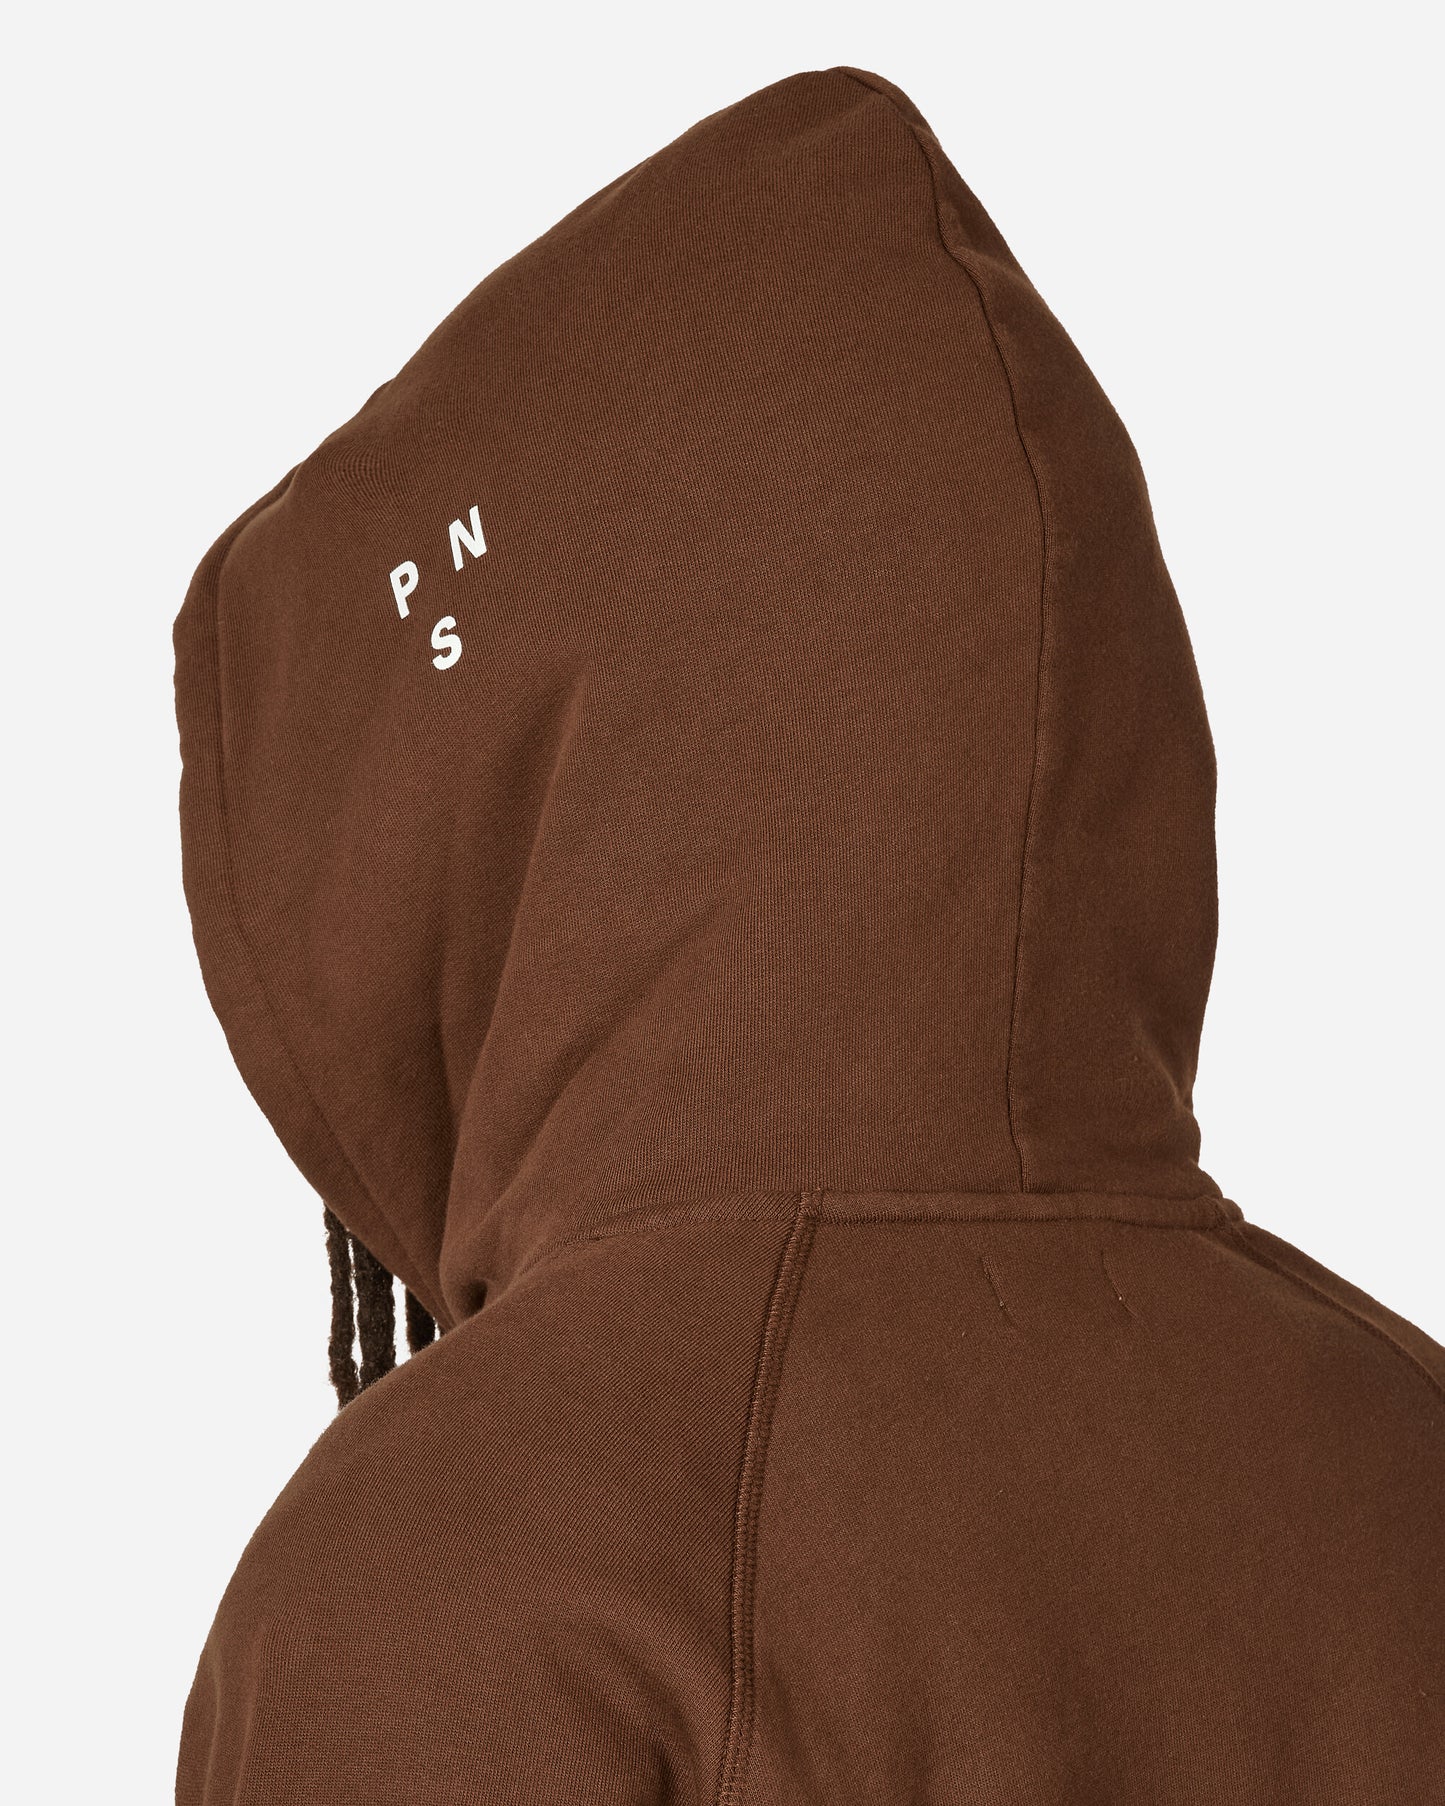 Pas Normal Studios Off-Race Logo Hoodie Bronze Sweatshirts Hoodies NS2021AF 2150